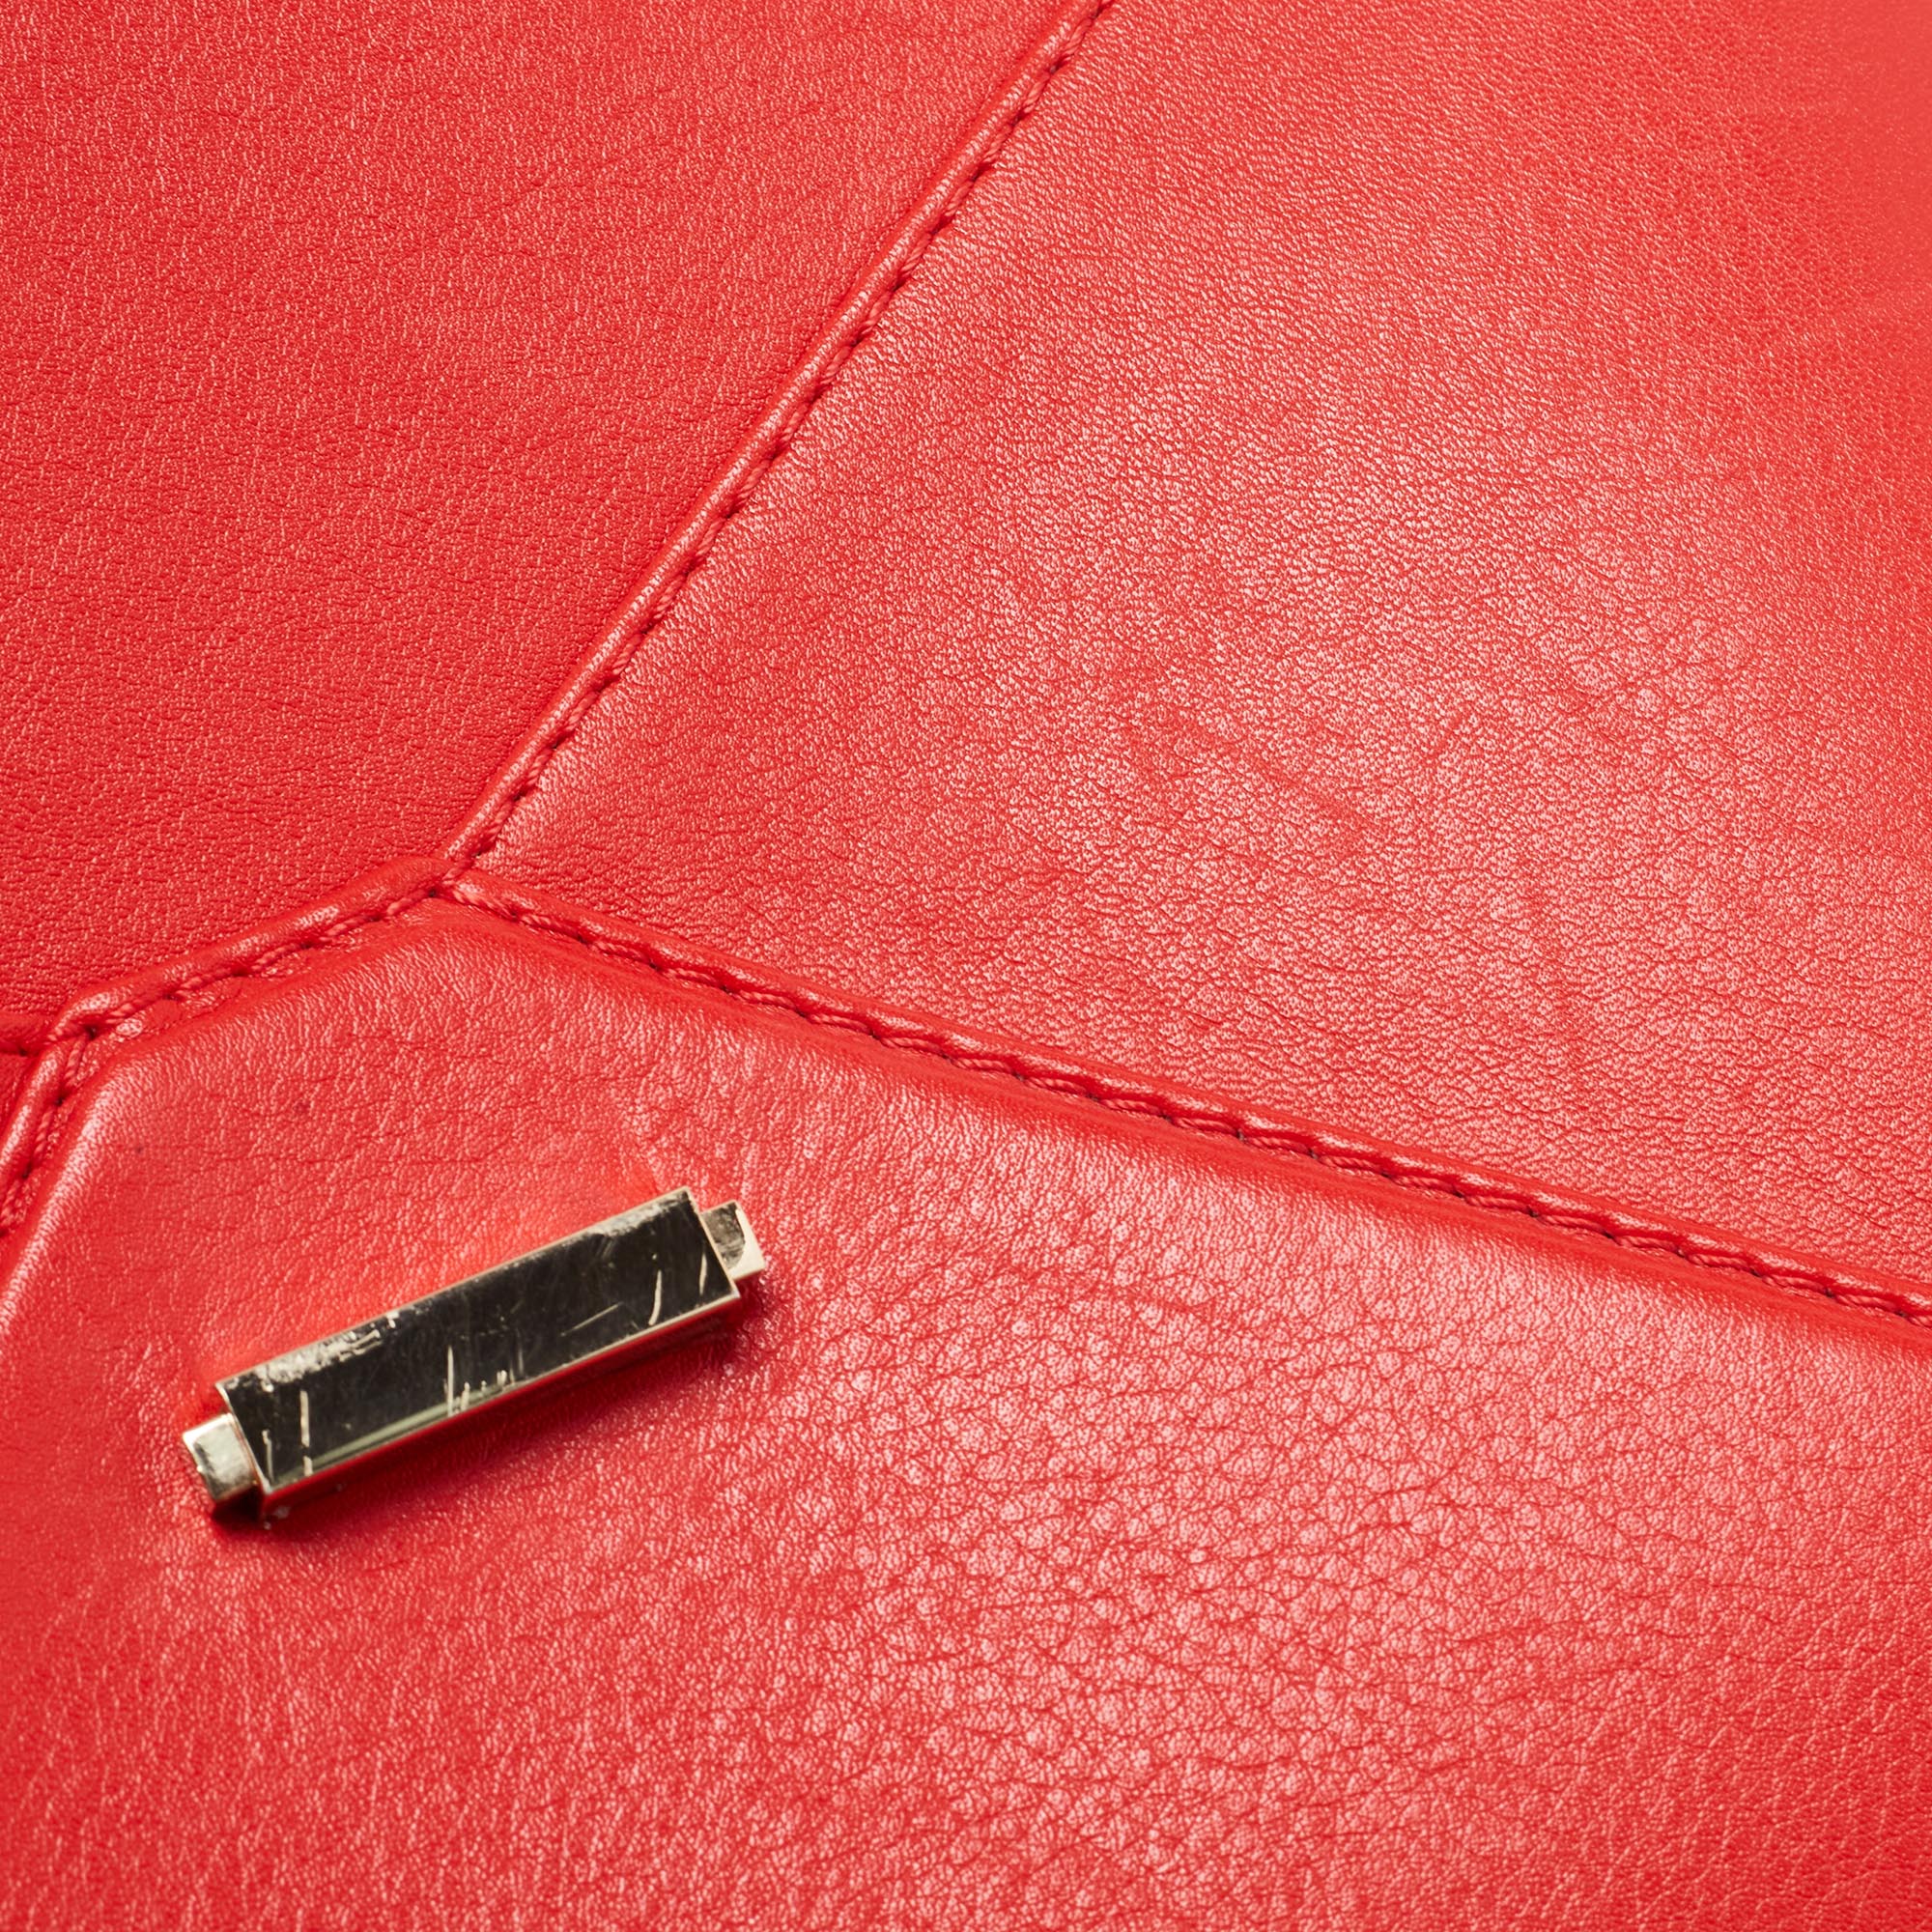 CH Carolina Herrera Red Leather Envelope Flap Shoulder Bag